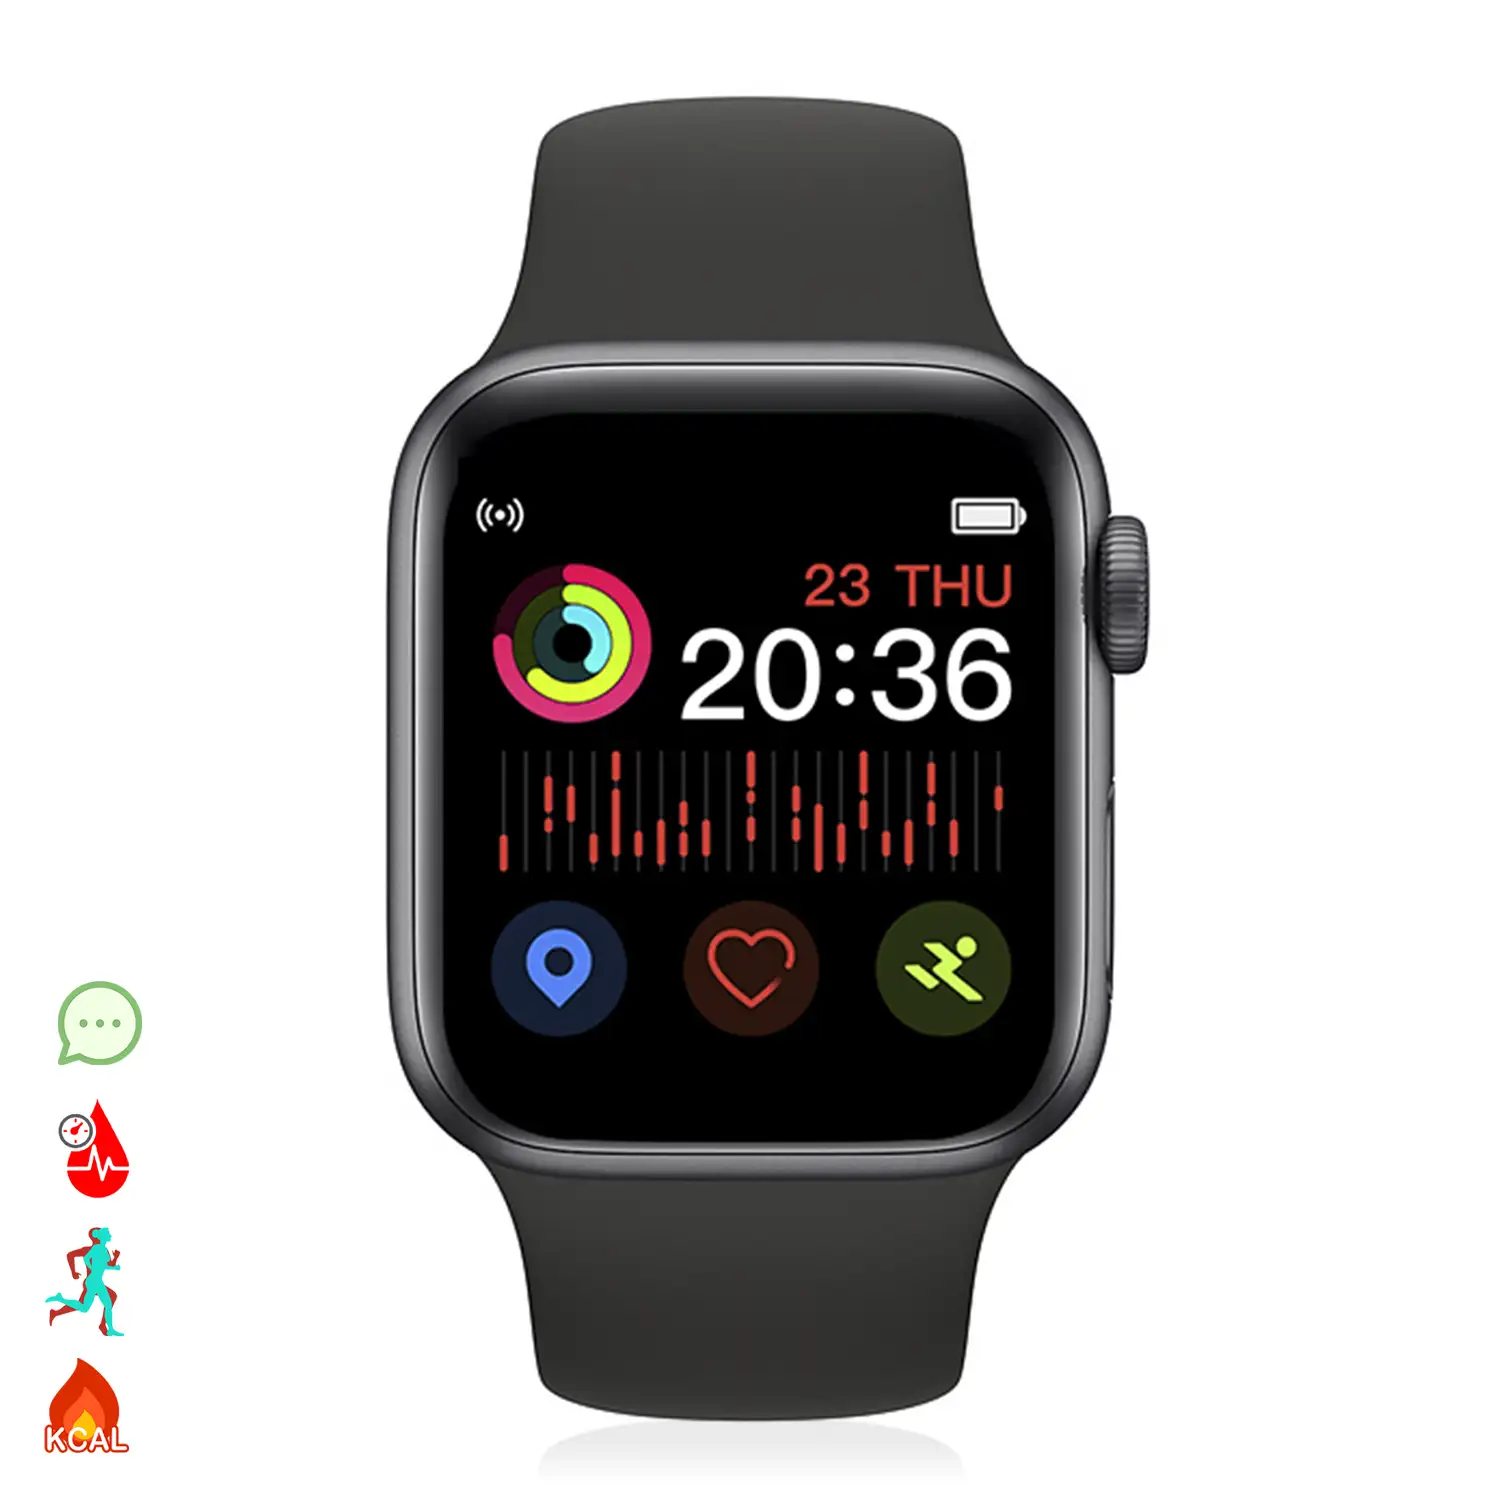 Smartwatch X6 con modo multideportivo, llamadas bluetooth manos libres y notificaciones para iOS y Android